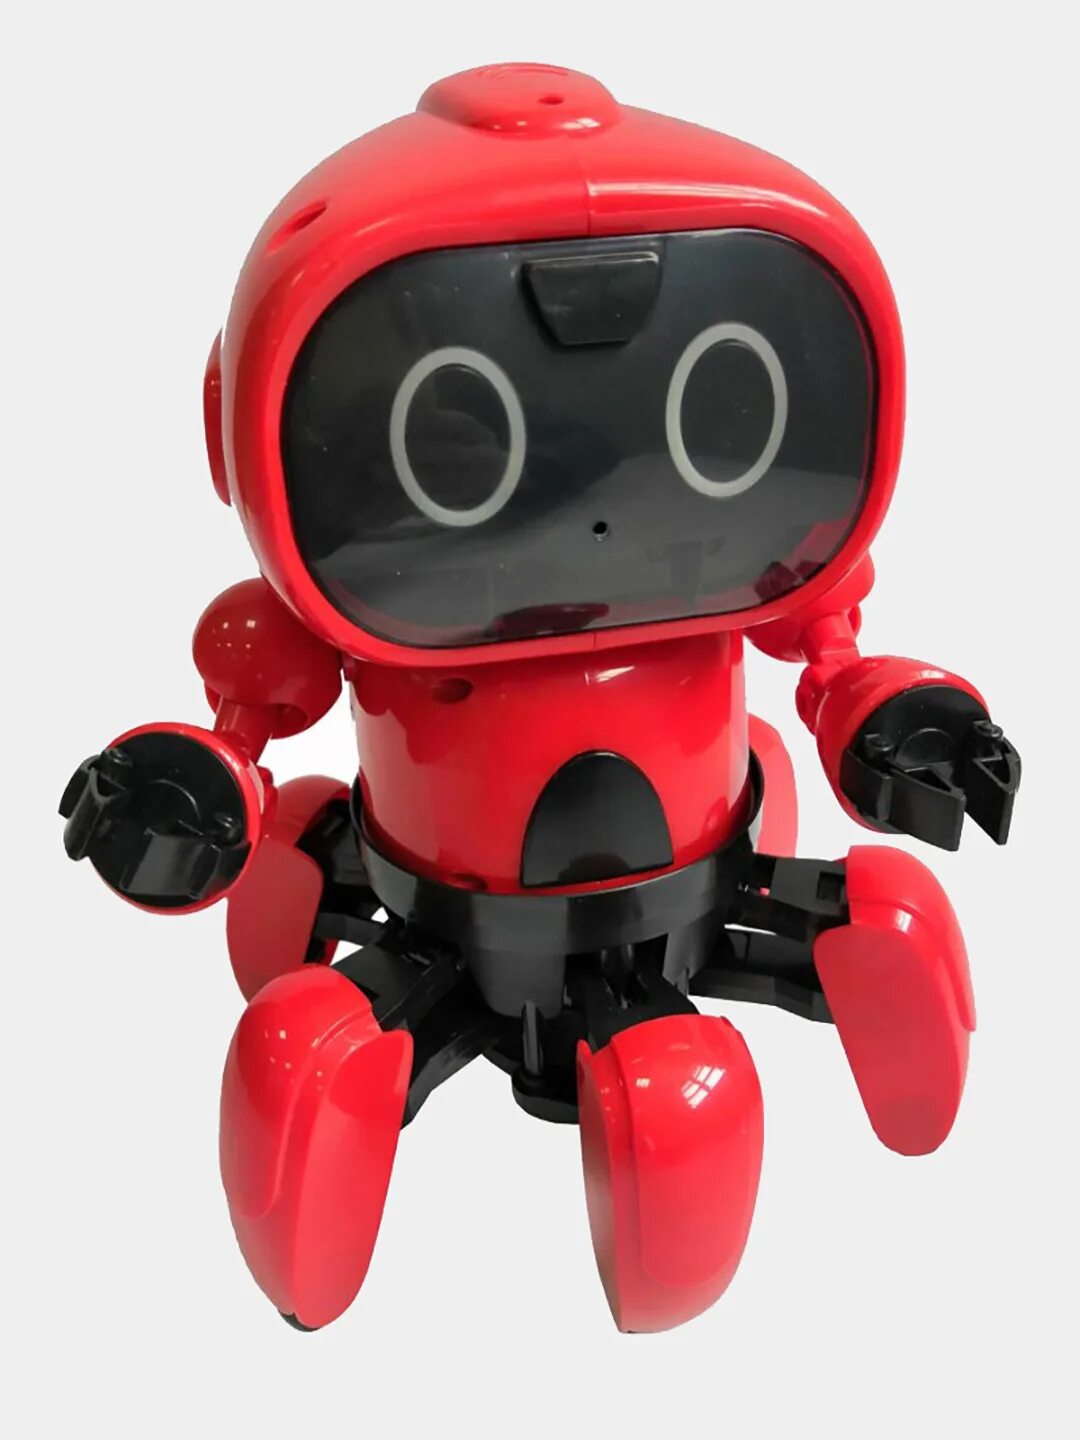 Купить робота на пульте. Радиоуправляемый робот - 5088w. Робот с пультом д/у вт826107. Красный робот игрушка. Игрушки роботы на пульте управления с камерой.